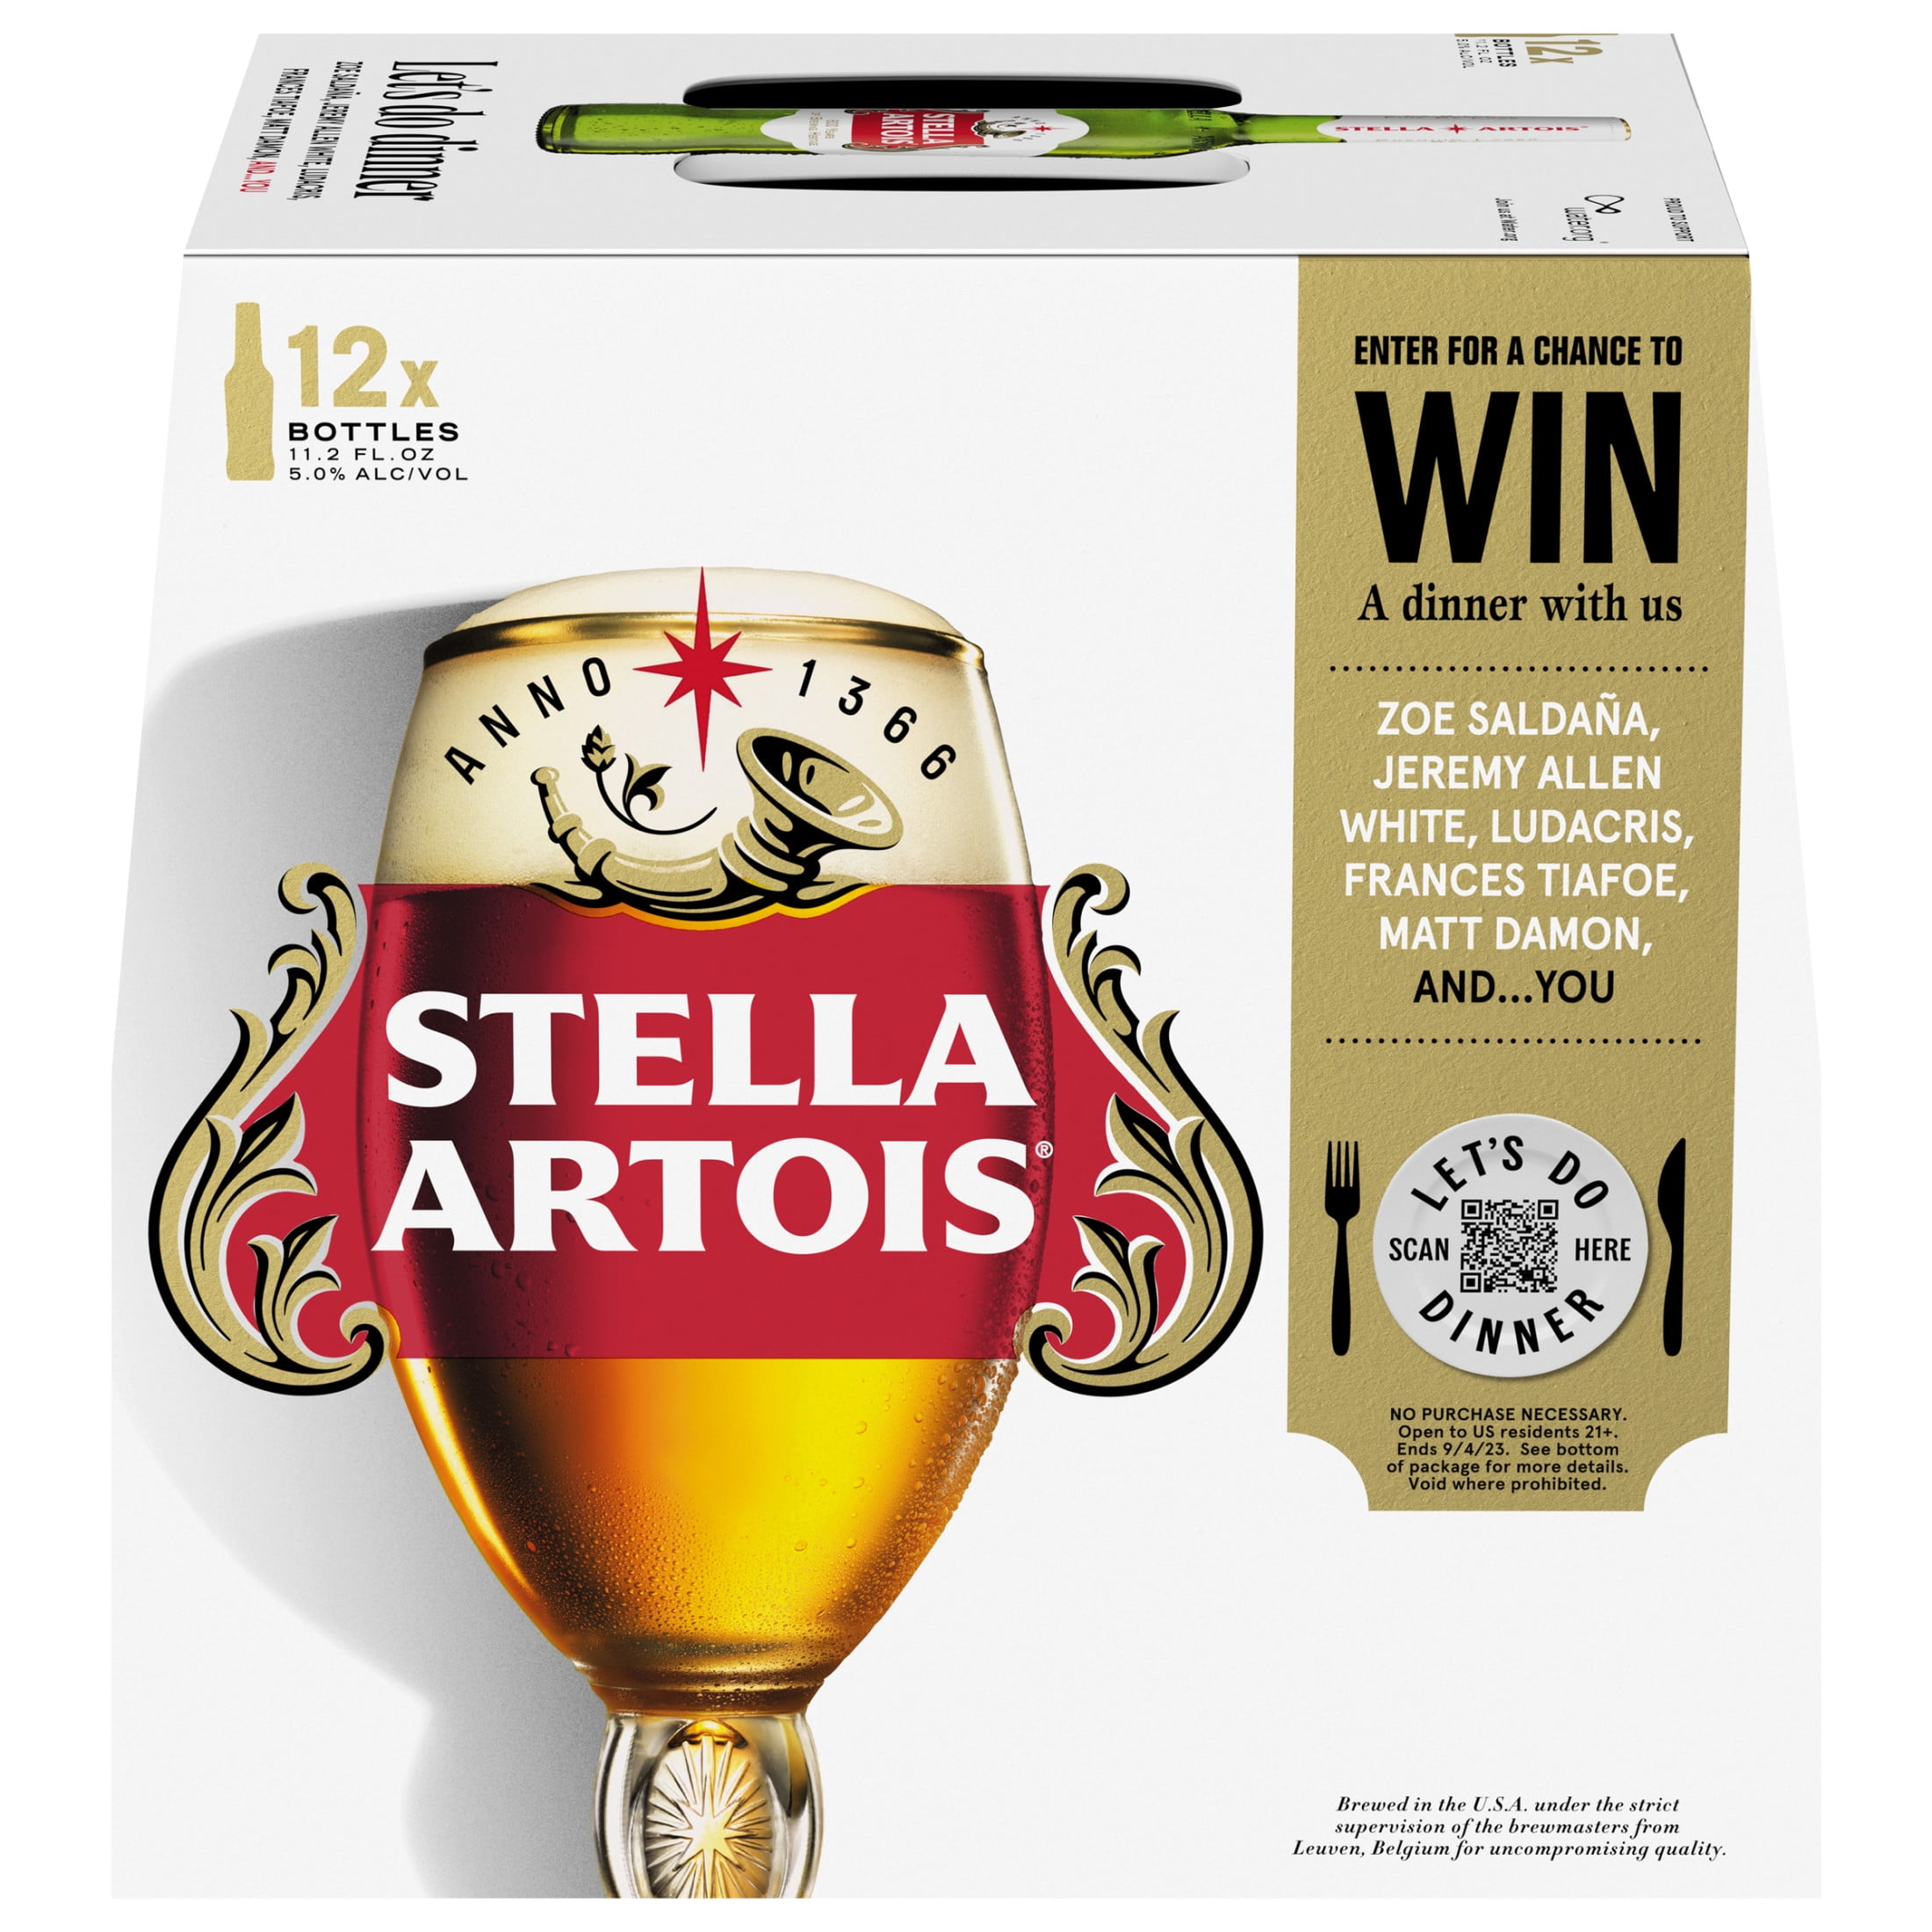 stella-artois-lager-12-pack-beer-11-2-fl-oz-bottles-5-0-abv